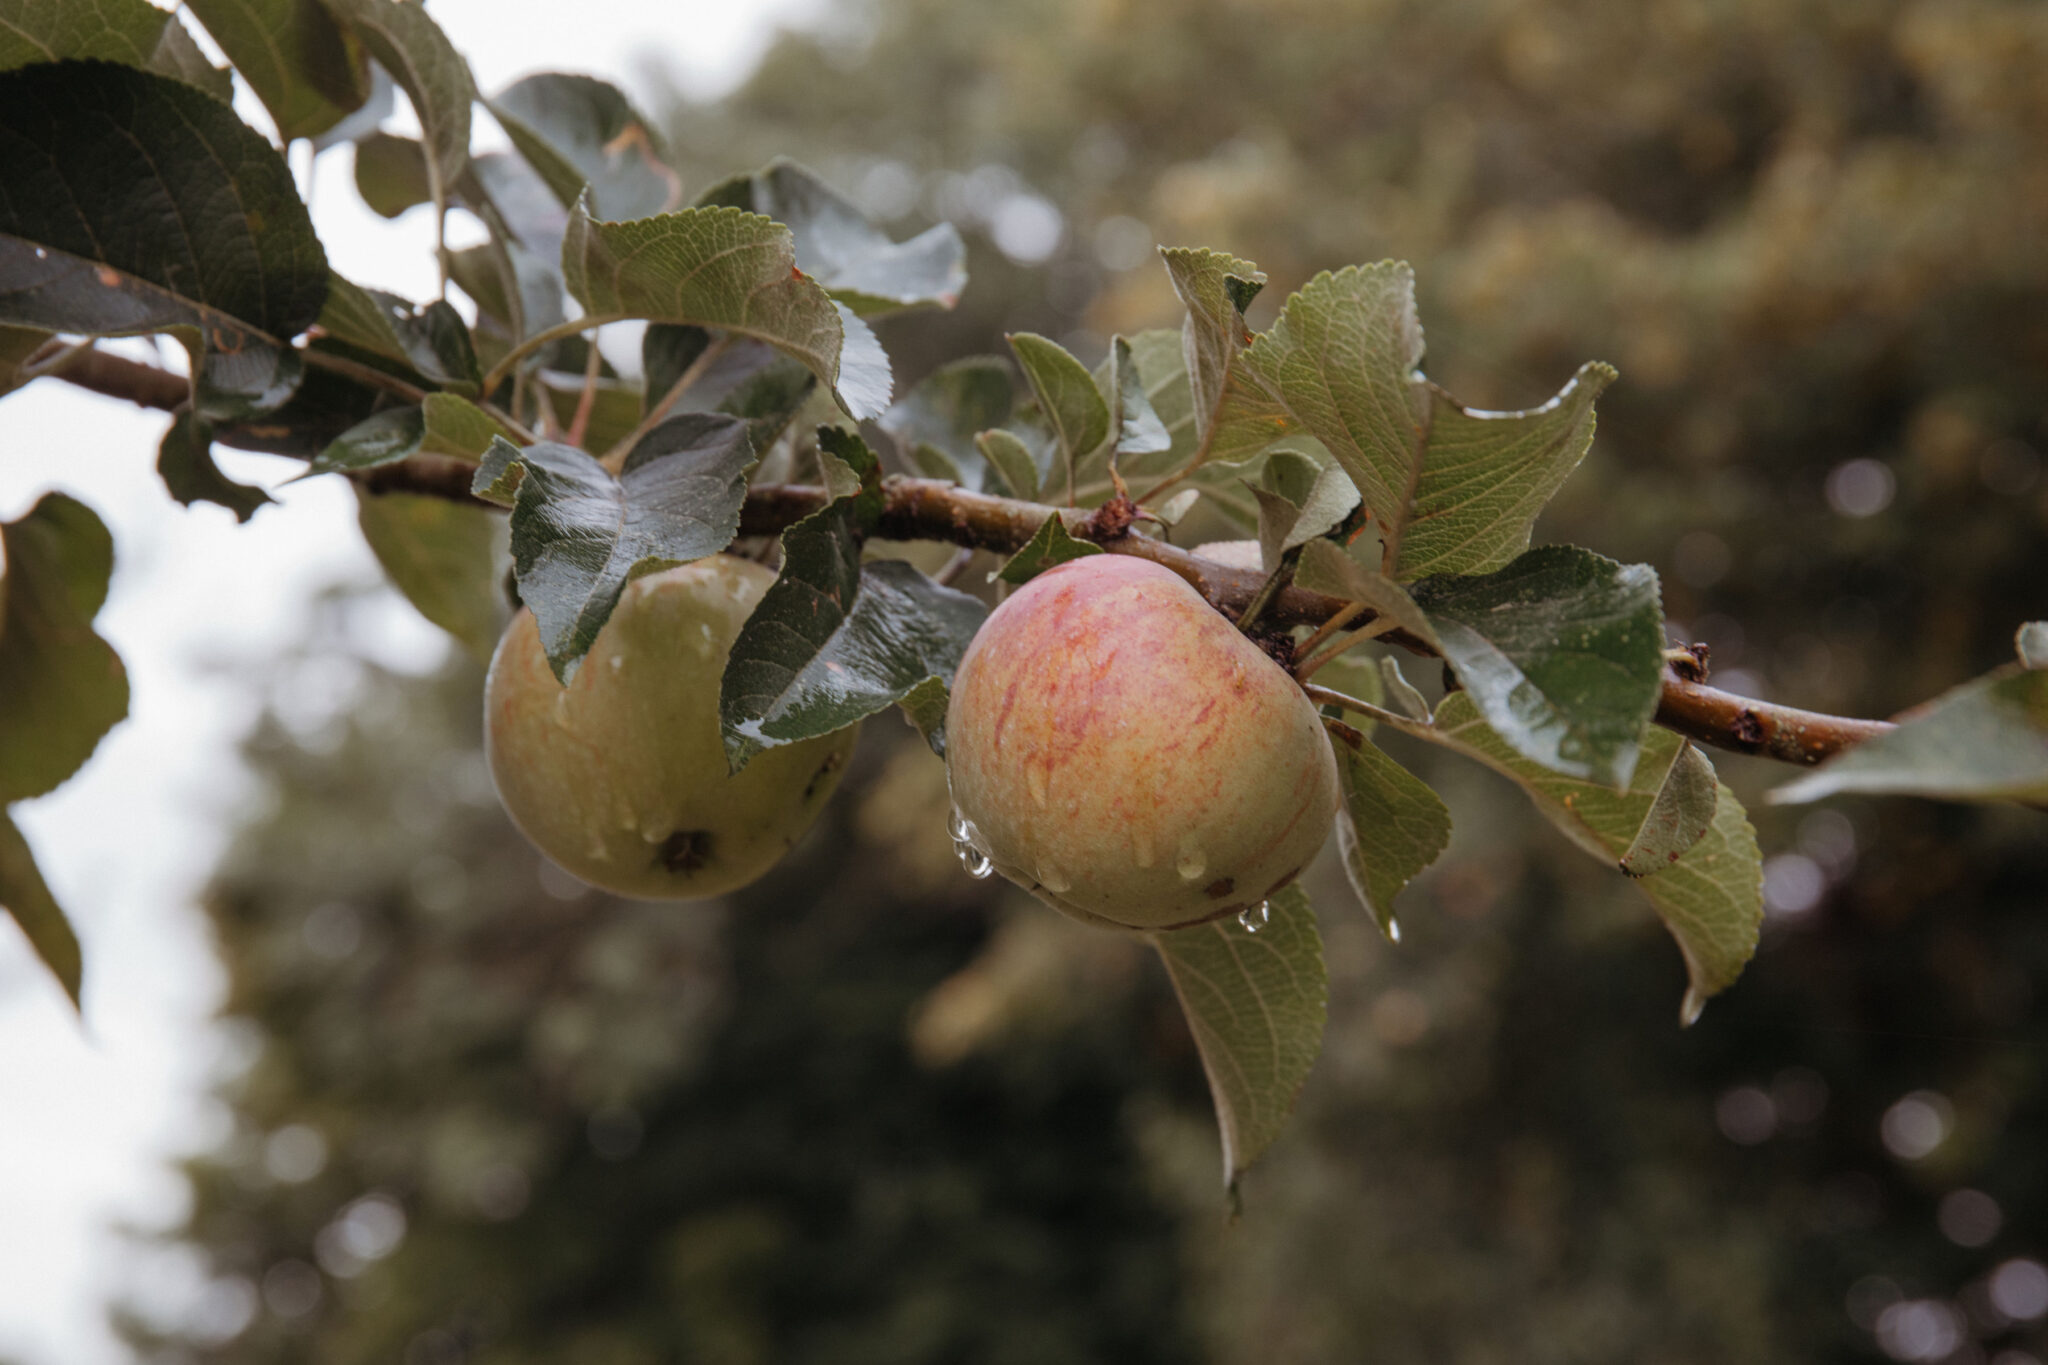 Rainwater on an apple tree